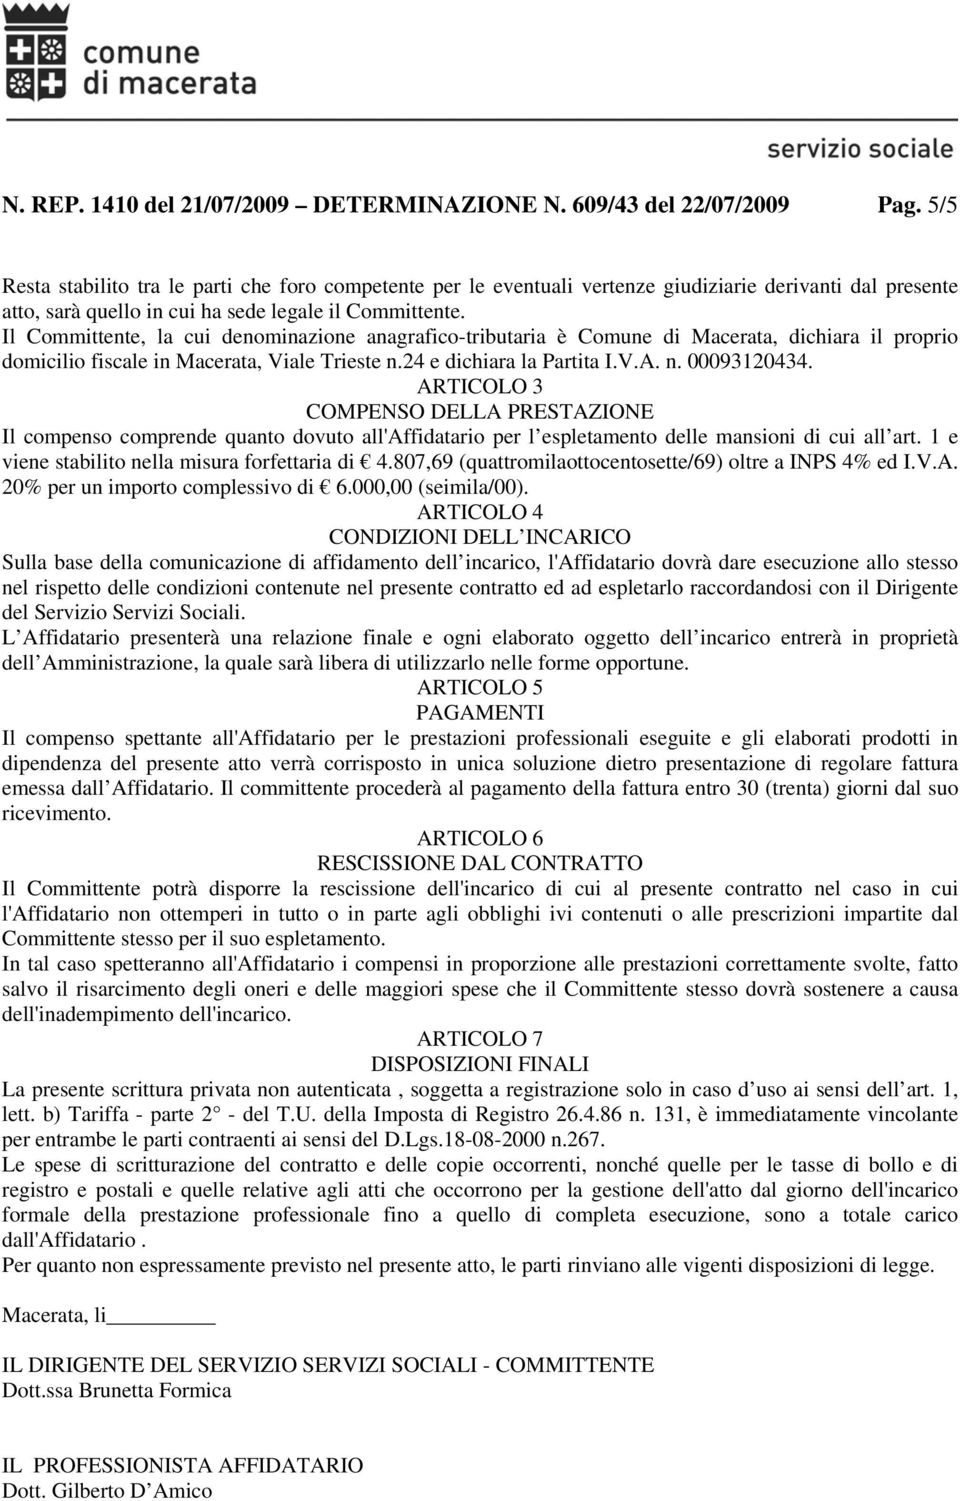 Il Committente, la cui denominazione anagrafico-tributaria è Comune di Macerata, dichiara il proprio domicilio fiscale in Macerata, Viale Trieste n.24 e dichiara la Partita I.V.A. n. 00093120434.